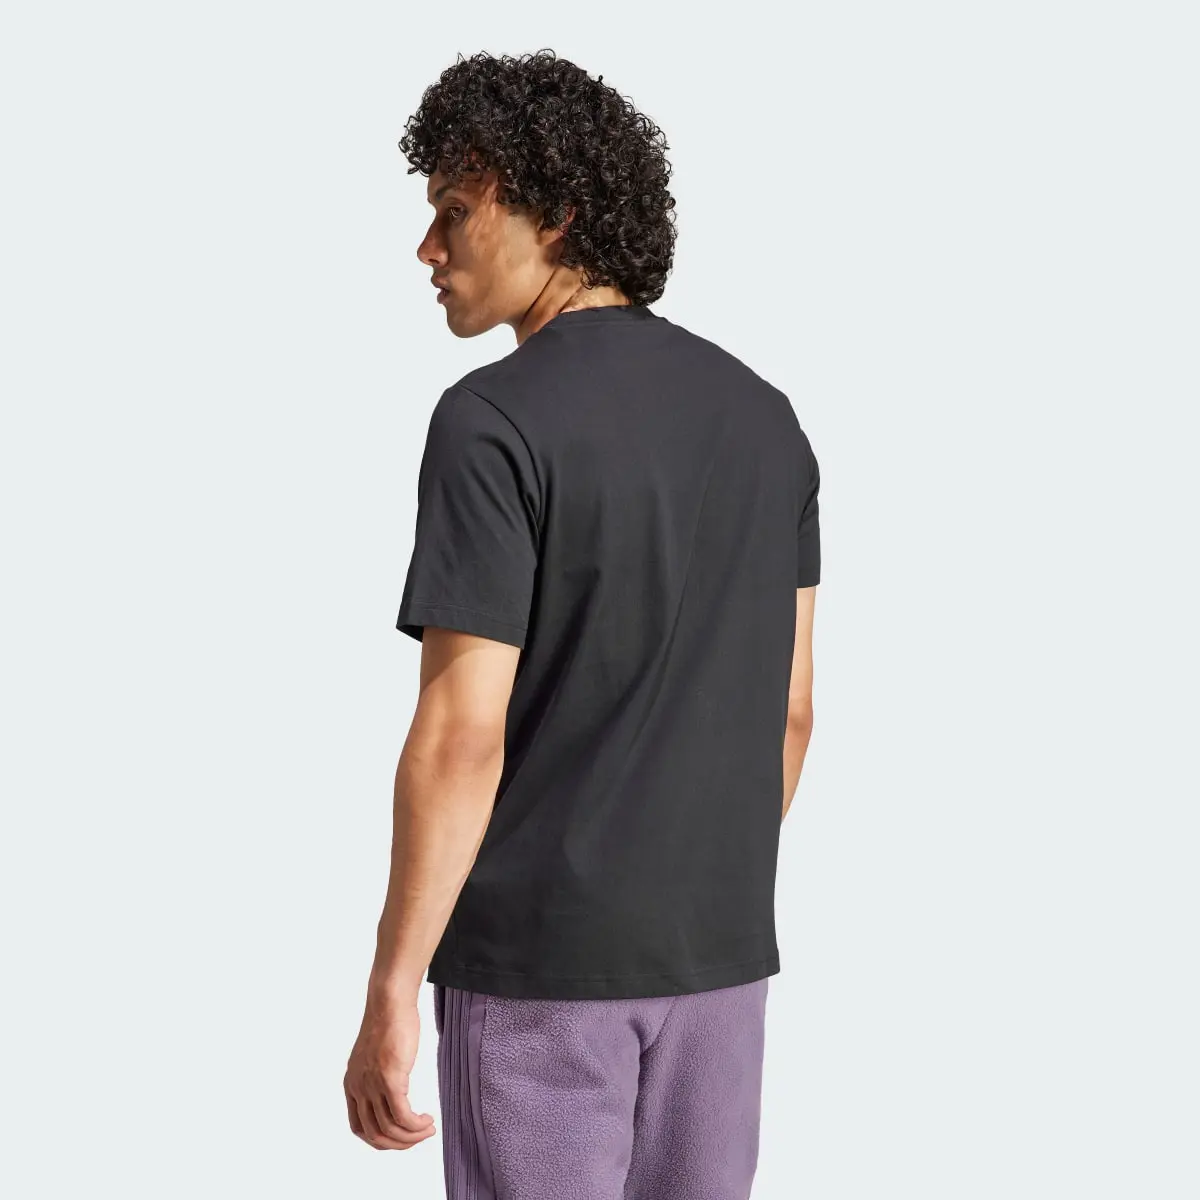 Adidas Tiro Graphic T-Shirt. 3